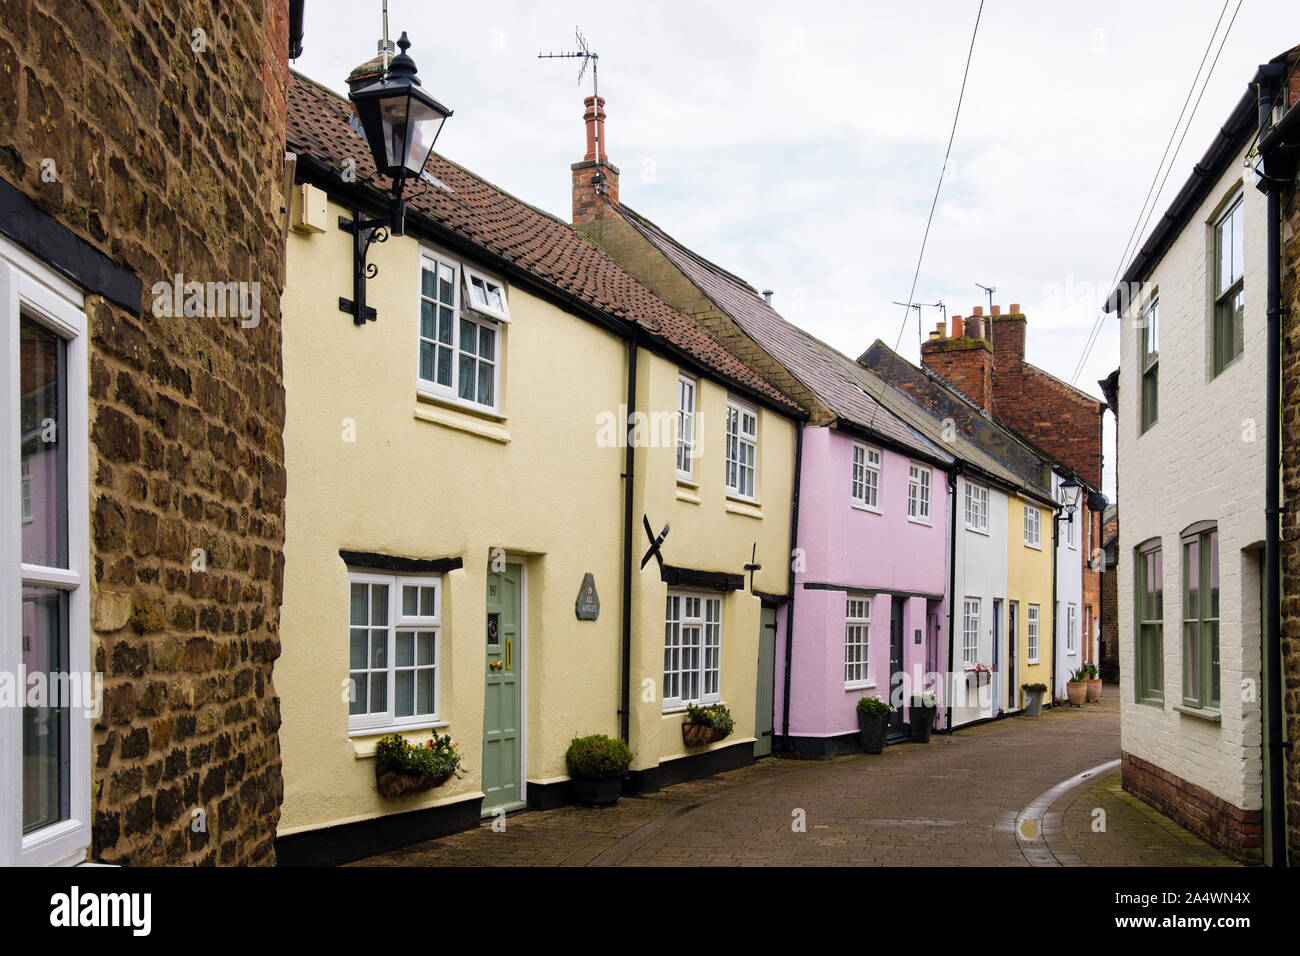 Fila de coloridas casas antiguas pintadas en la angosta calle residencial. El Dean's Street, Oakham, Rutland, Inglaterra, Reino Unido, Gran Bretaña Foto de stock